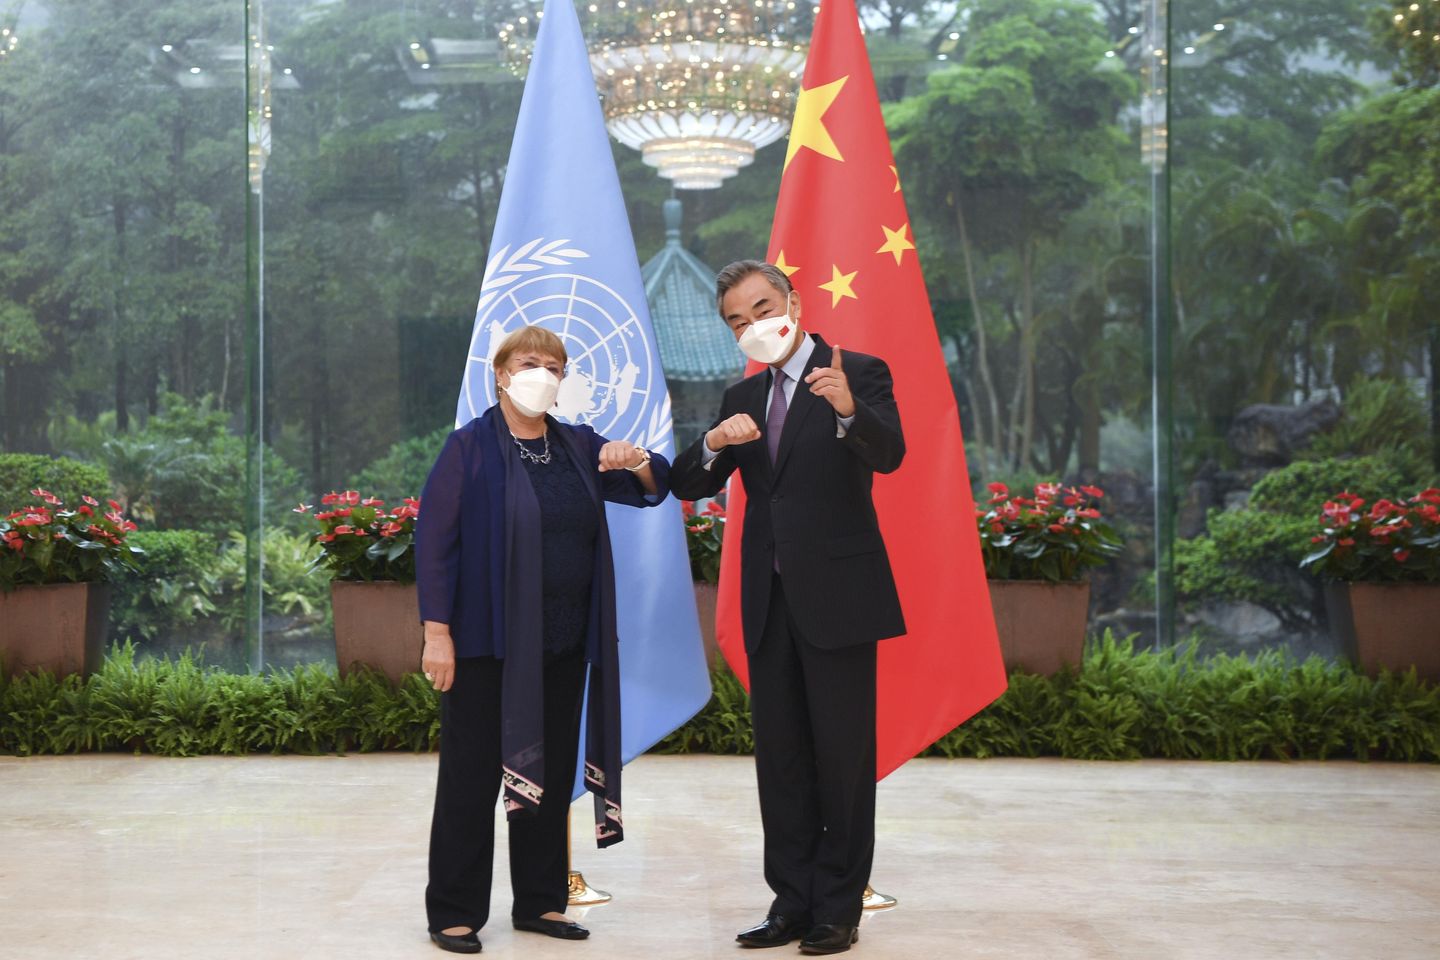 Çin, BM hakları yetkilisi Sincan'ı ziyaret ederken sabotaj olduğunu iddia etti